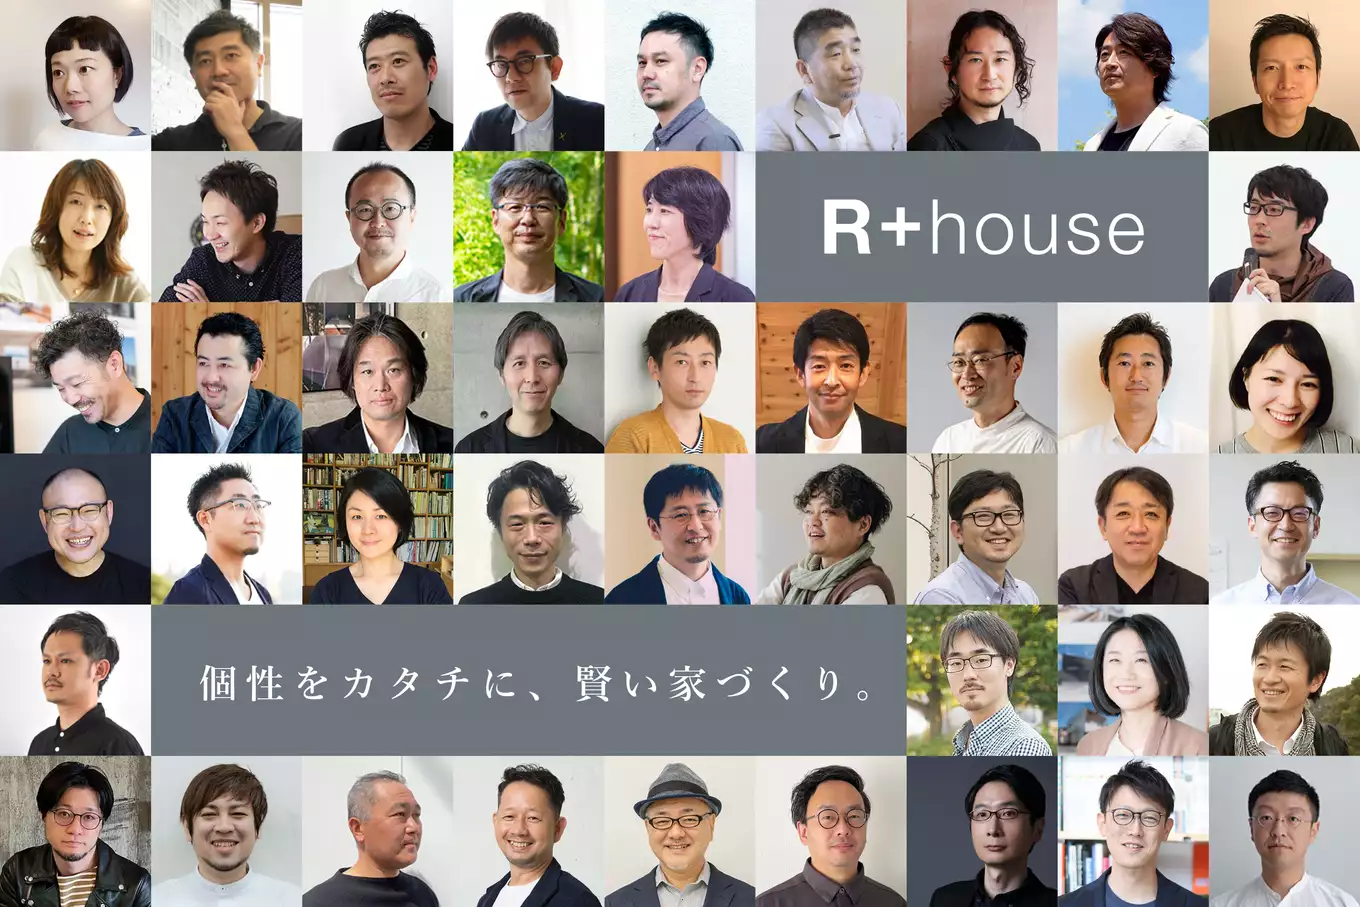  R+house × ササキハウスの家づくり写真